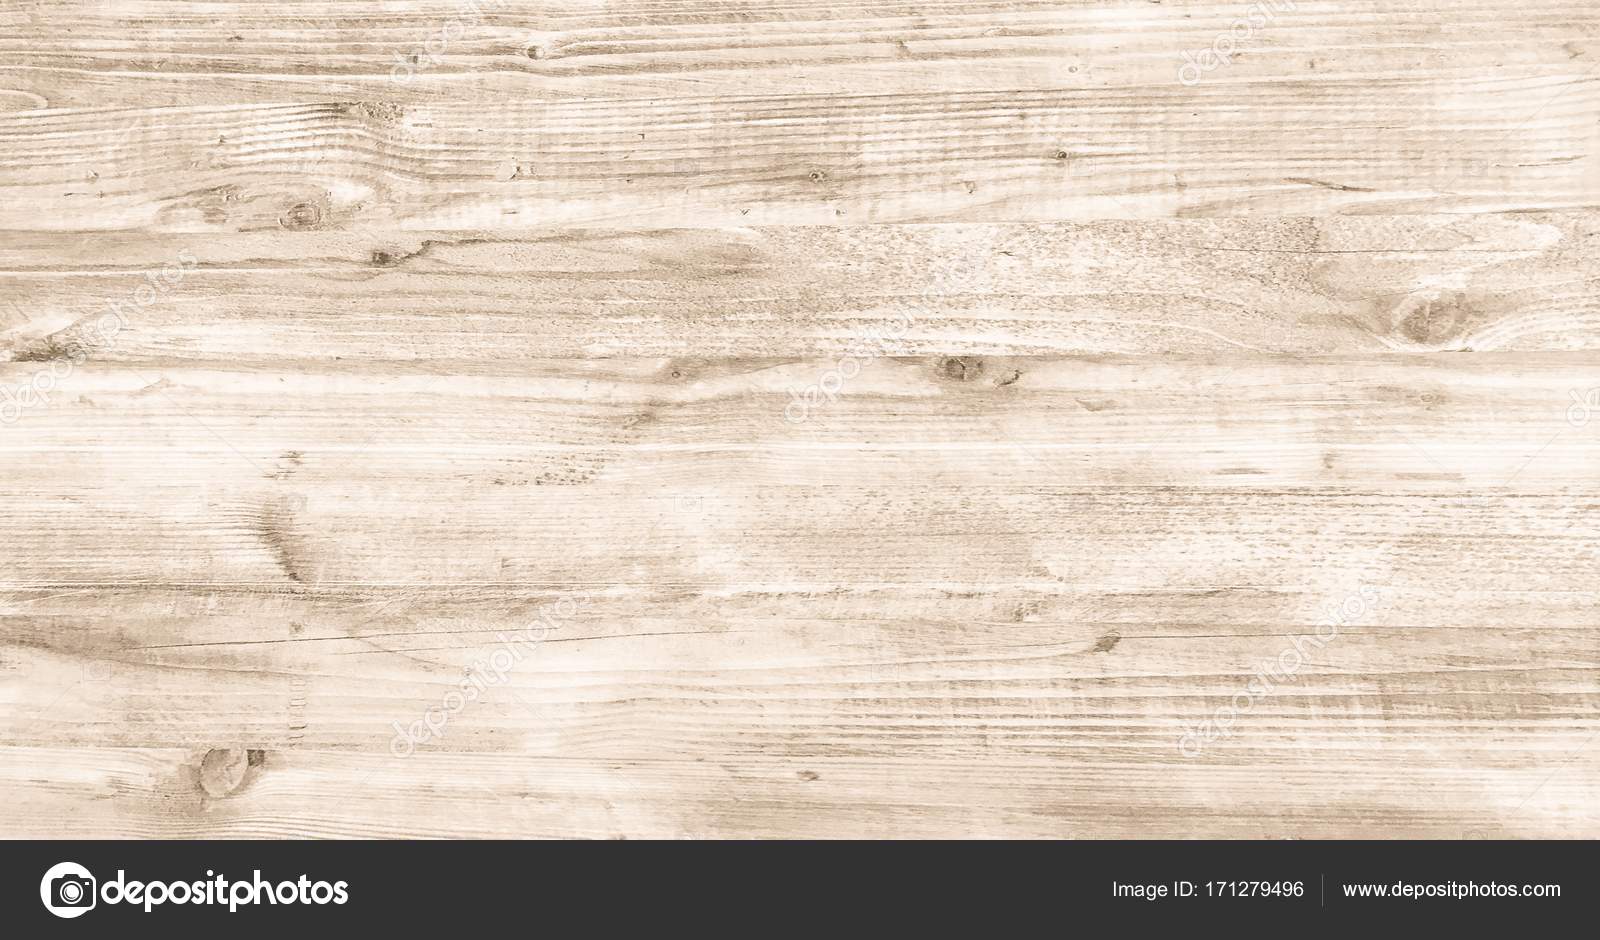 Đón xem hình ảnh nền gỗ nhạt đẹp mắt, với sự tương phản giữa phần trắng và phần nâu sáng. Với nền gỗ nhạt, bạn sẽ cảm thấy được sự gần gũi và thuận tiện, hỗ trợ cho các nội thất nhà cửa của bạn trở nên hoàn hảo hơn.